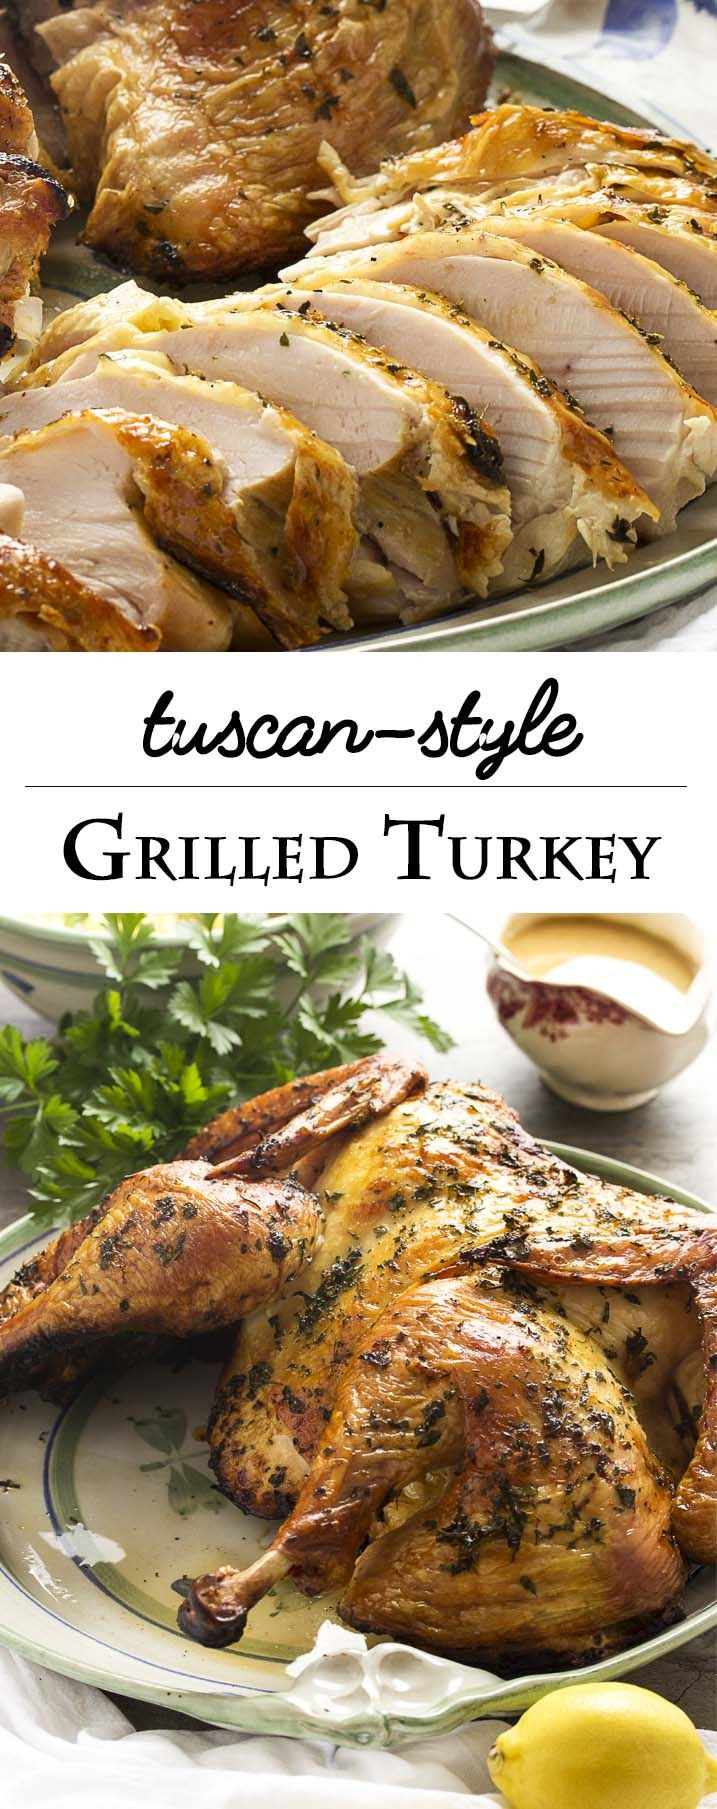 Grilled Thanksgiving Turkey
 Best 25 Grilled turkey ideas on Pinterest